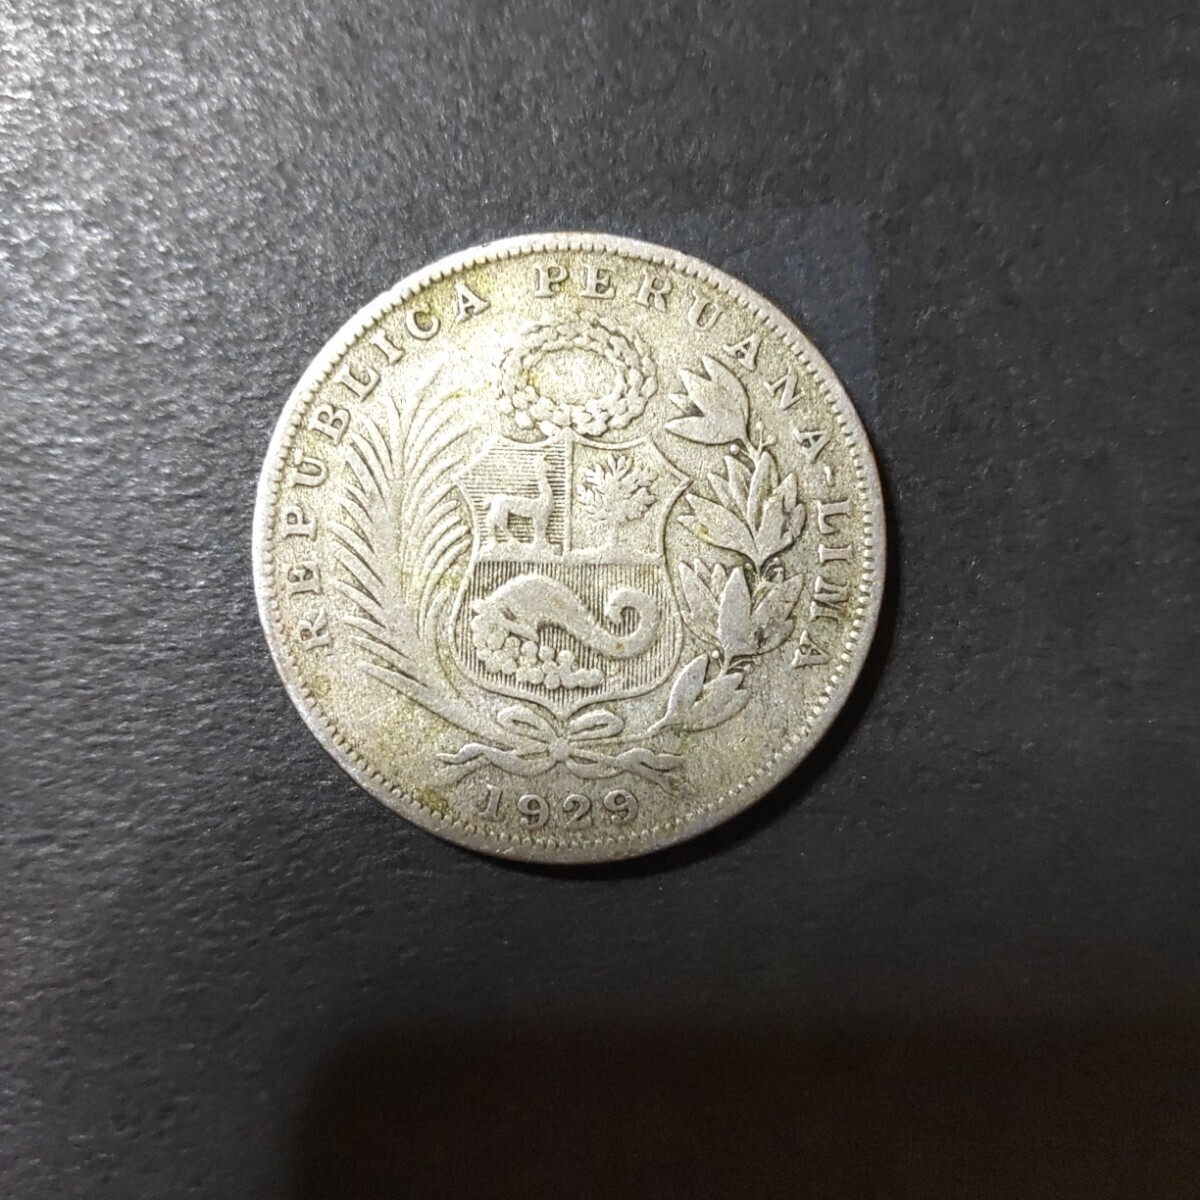 ペルー 1/2ソル銀貨(1929)の画像3